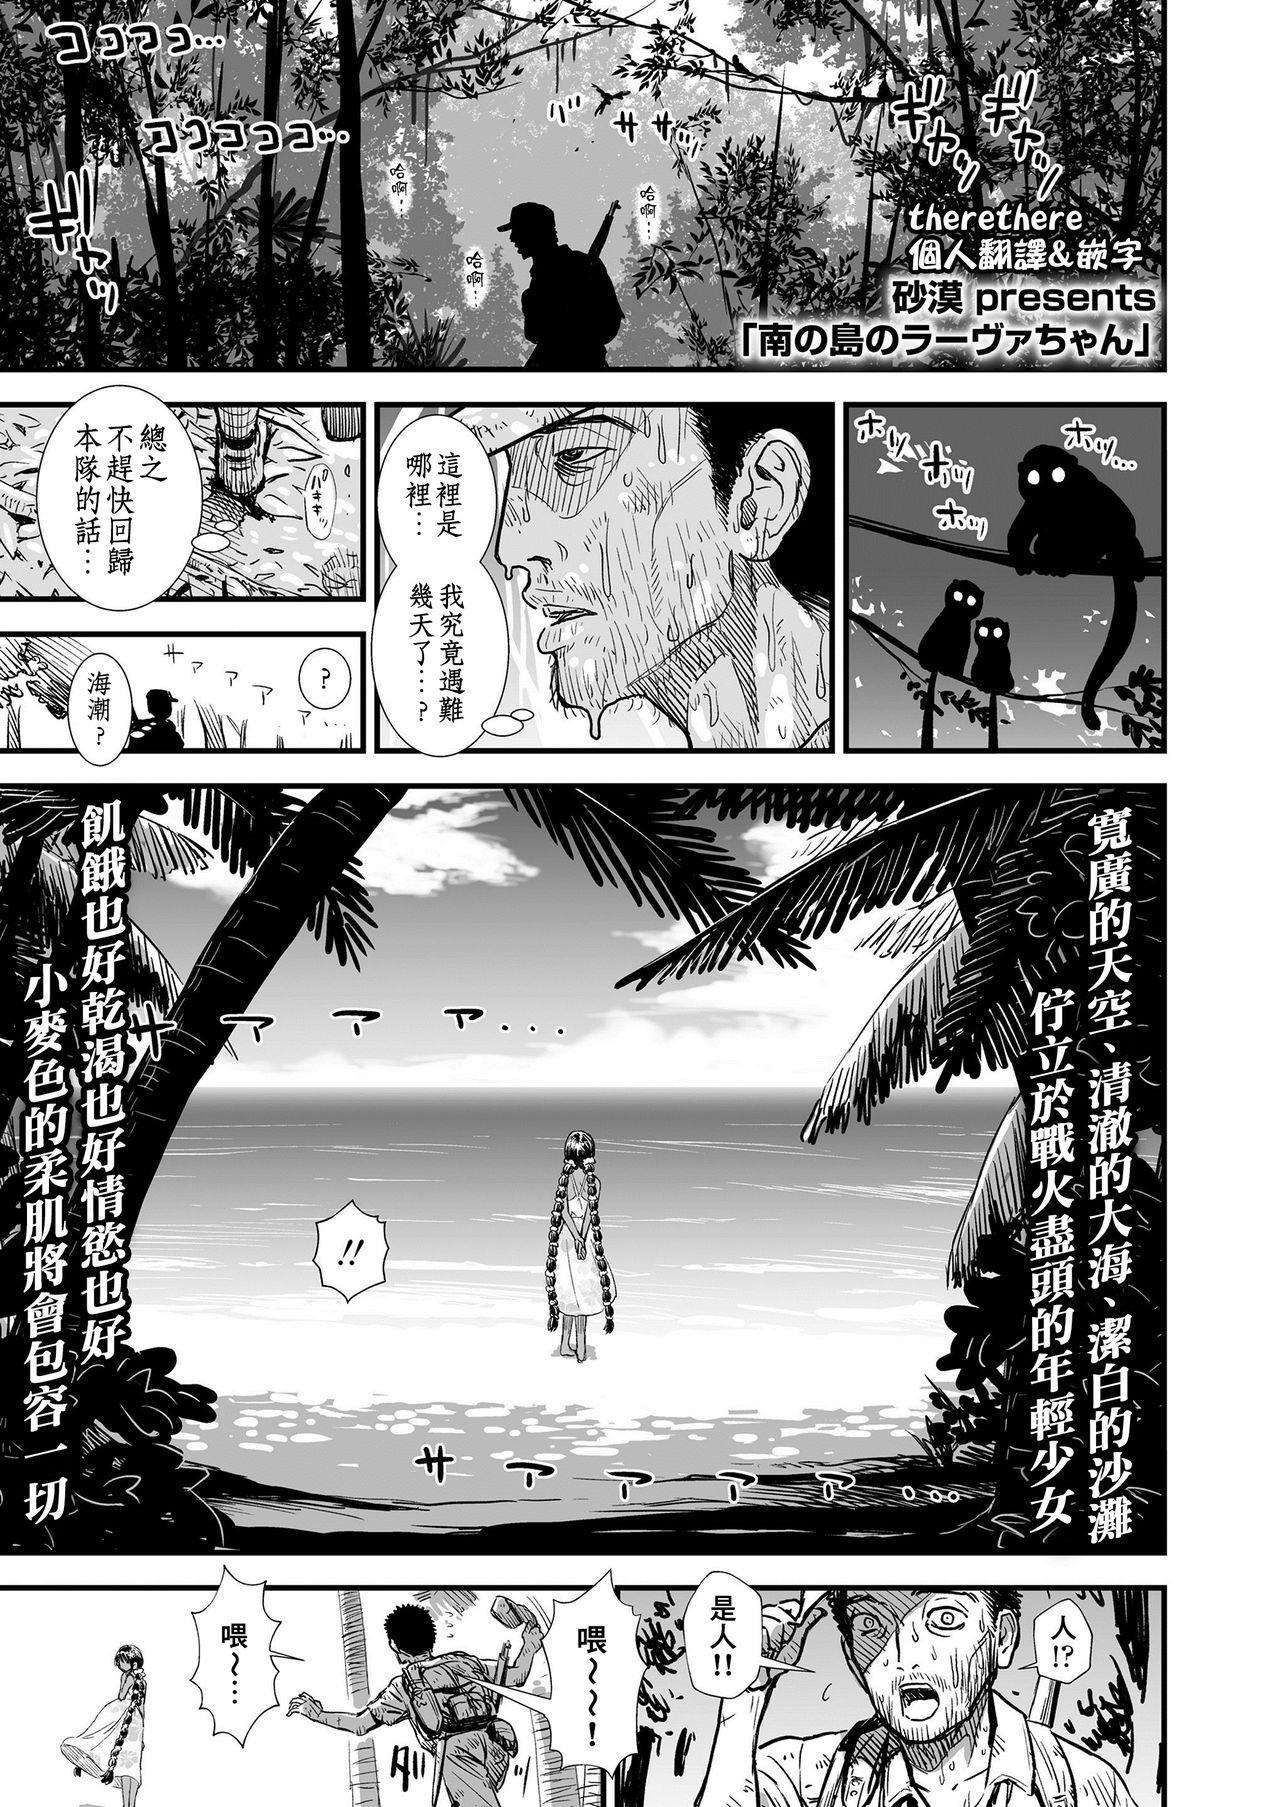 Hardcore Minami no Shima no Ravua-chan 8teen - Page 1